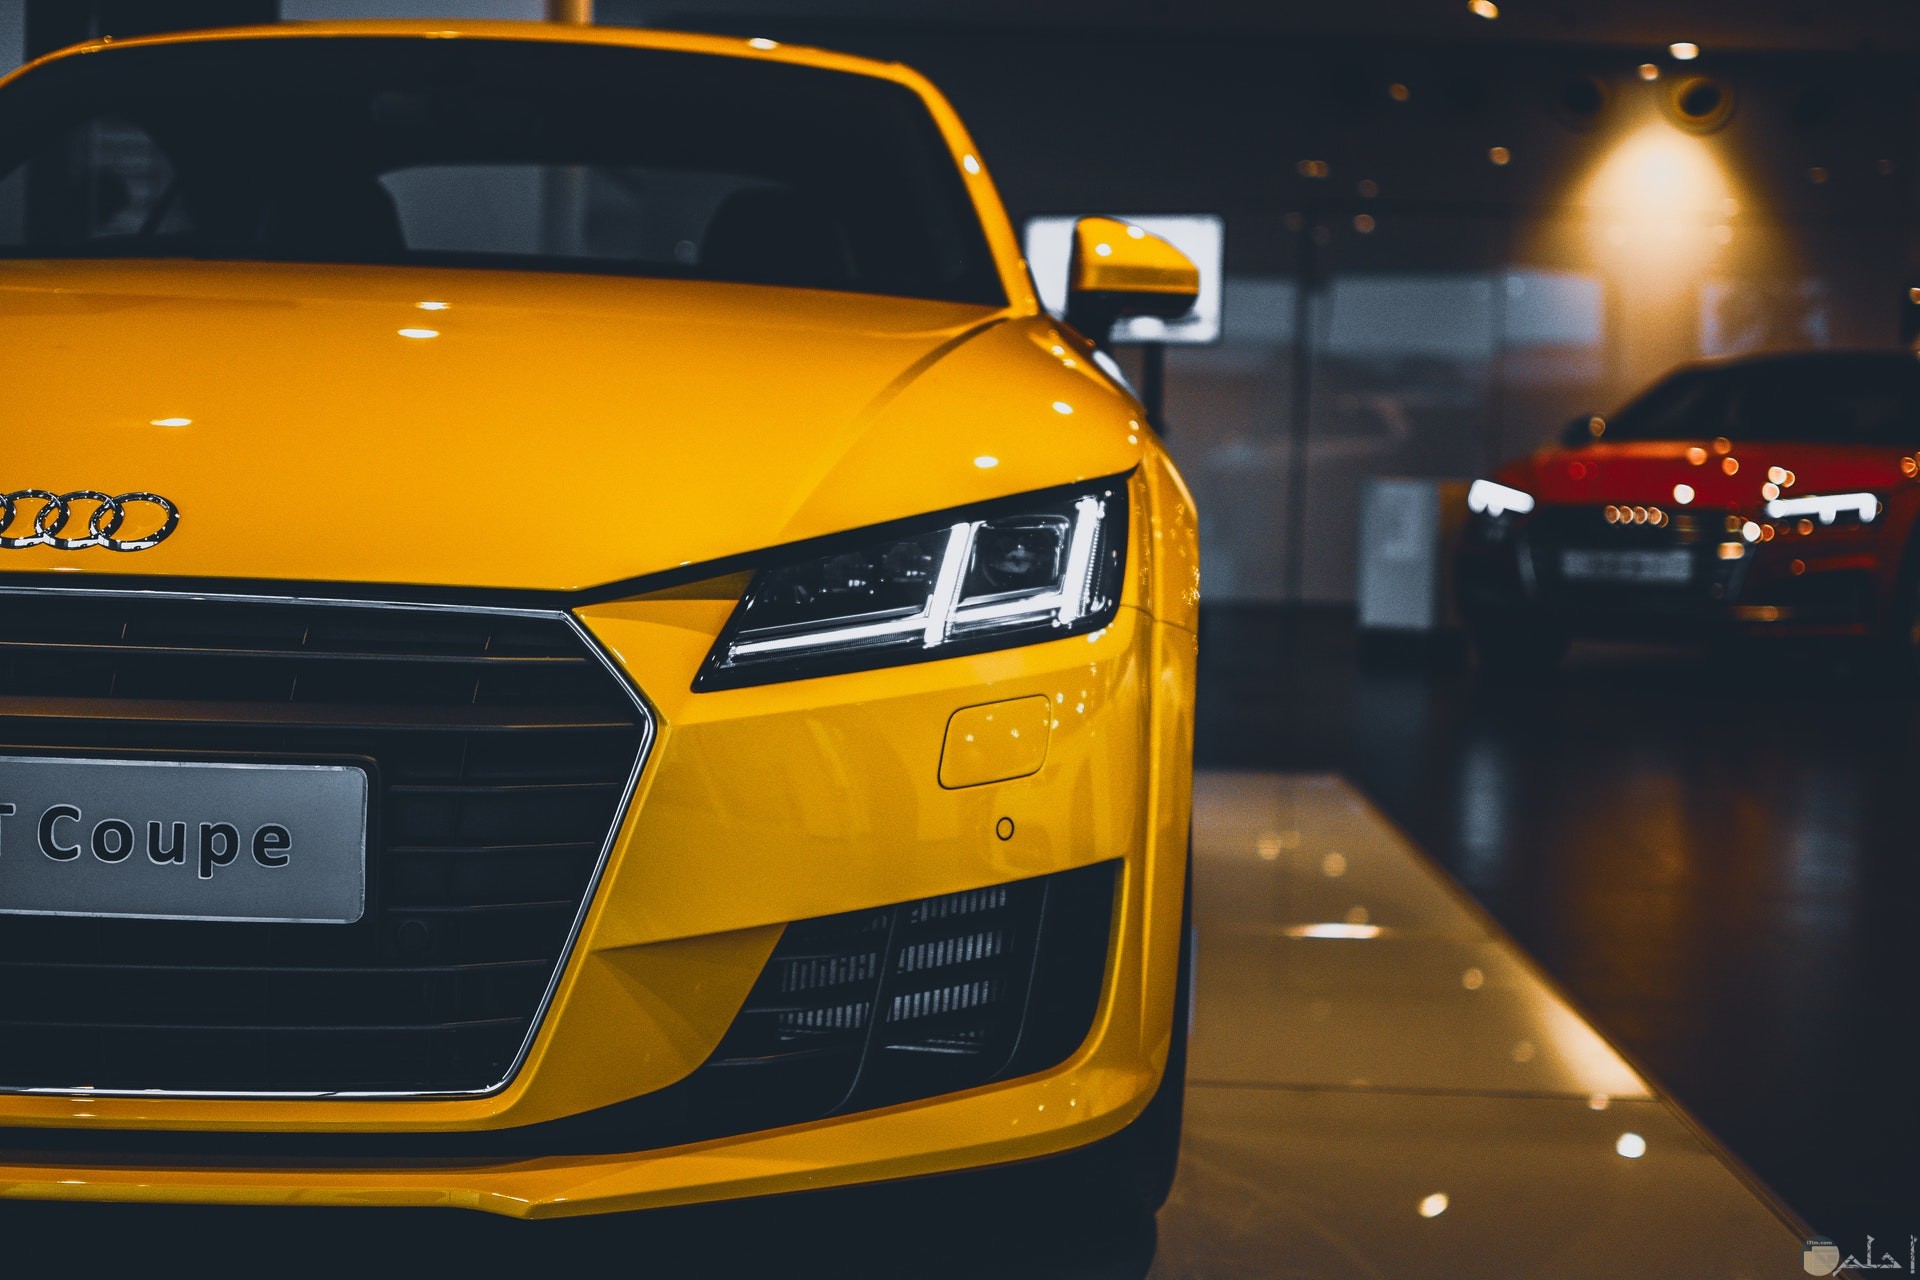 صورة سيارة أودي صفراء فخمة جميلة ومميزة جدا خلفها سيارة حمراء